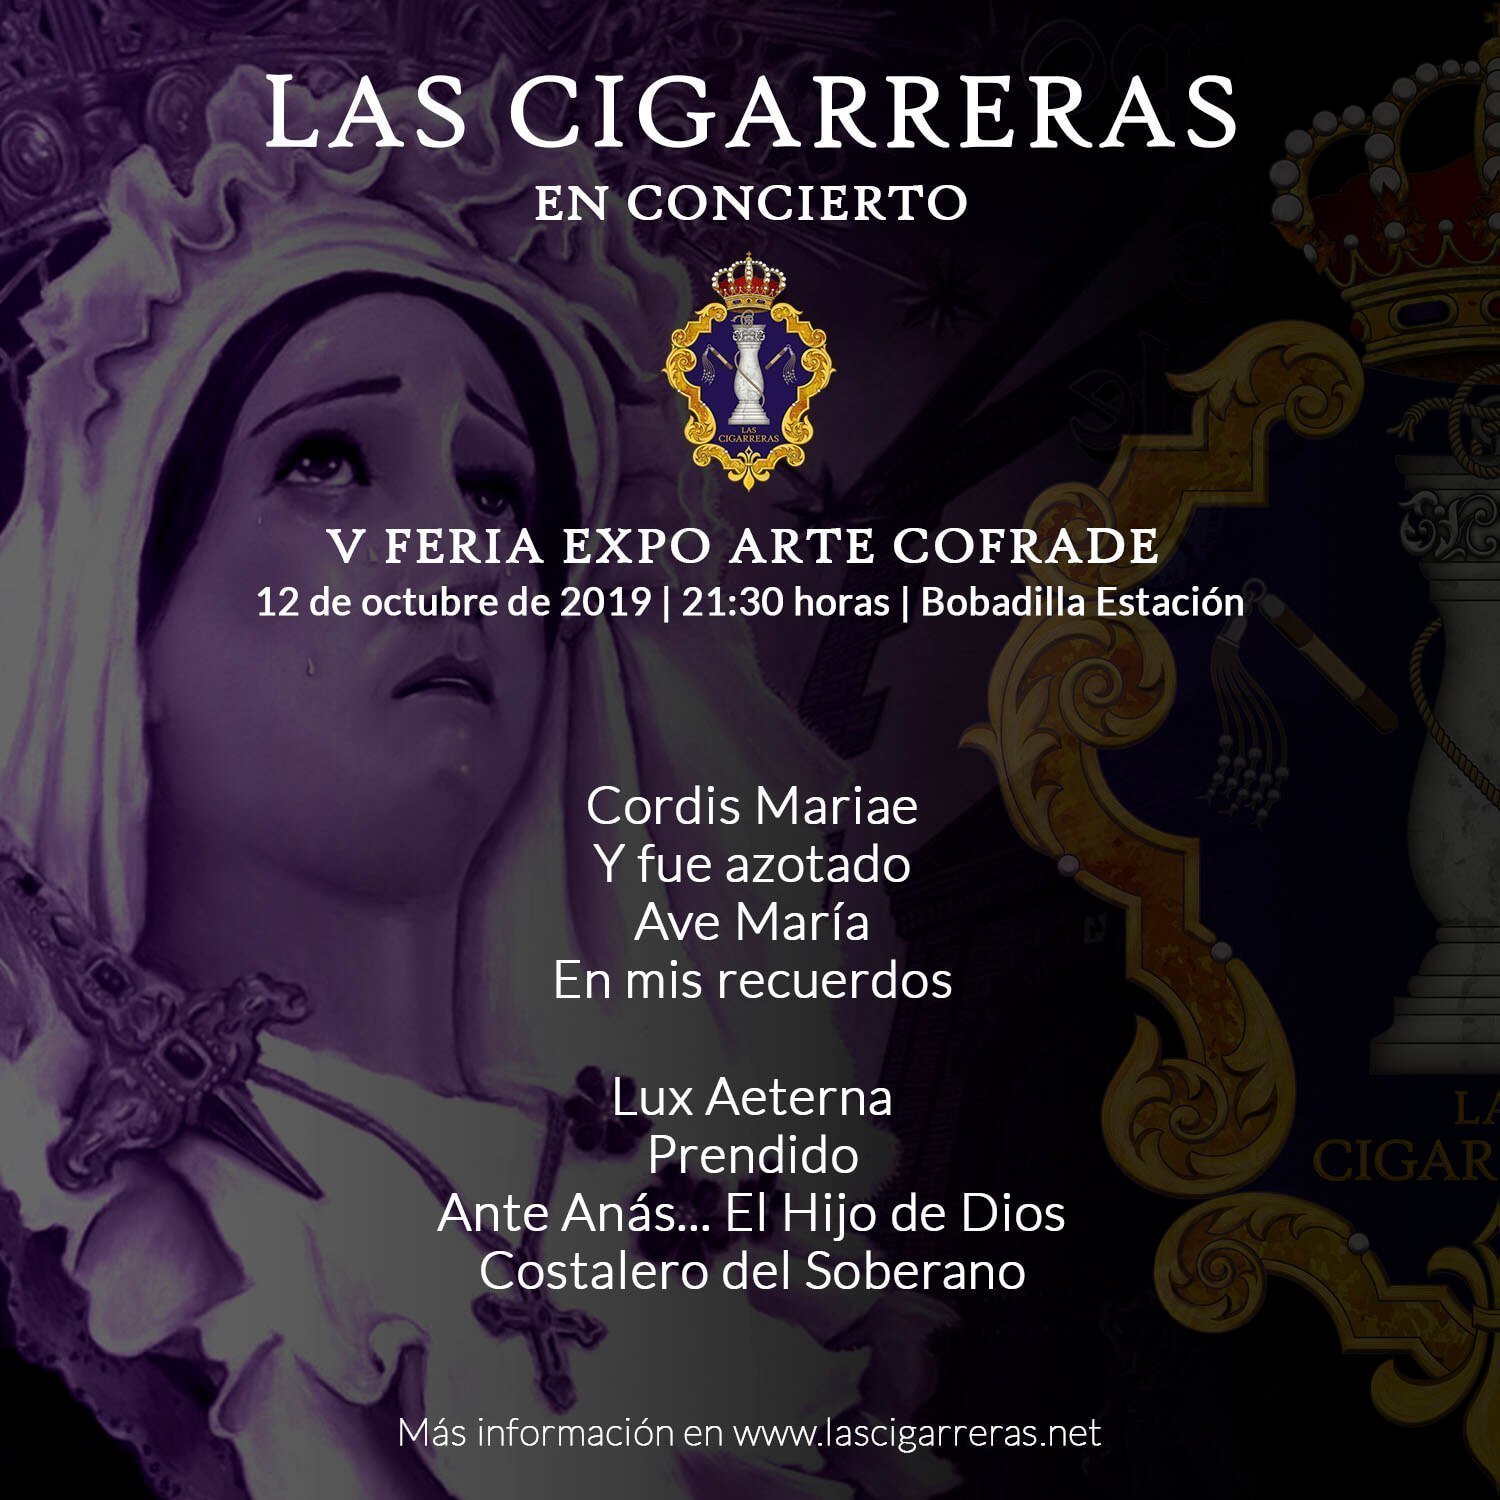 Repertorio del Concierto de Las Cigarreras en Expo Arte Cofrade 2019